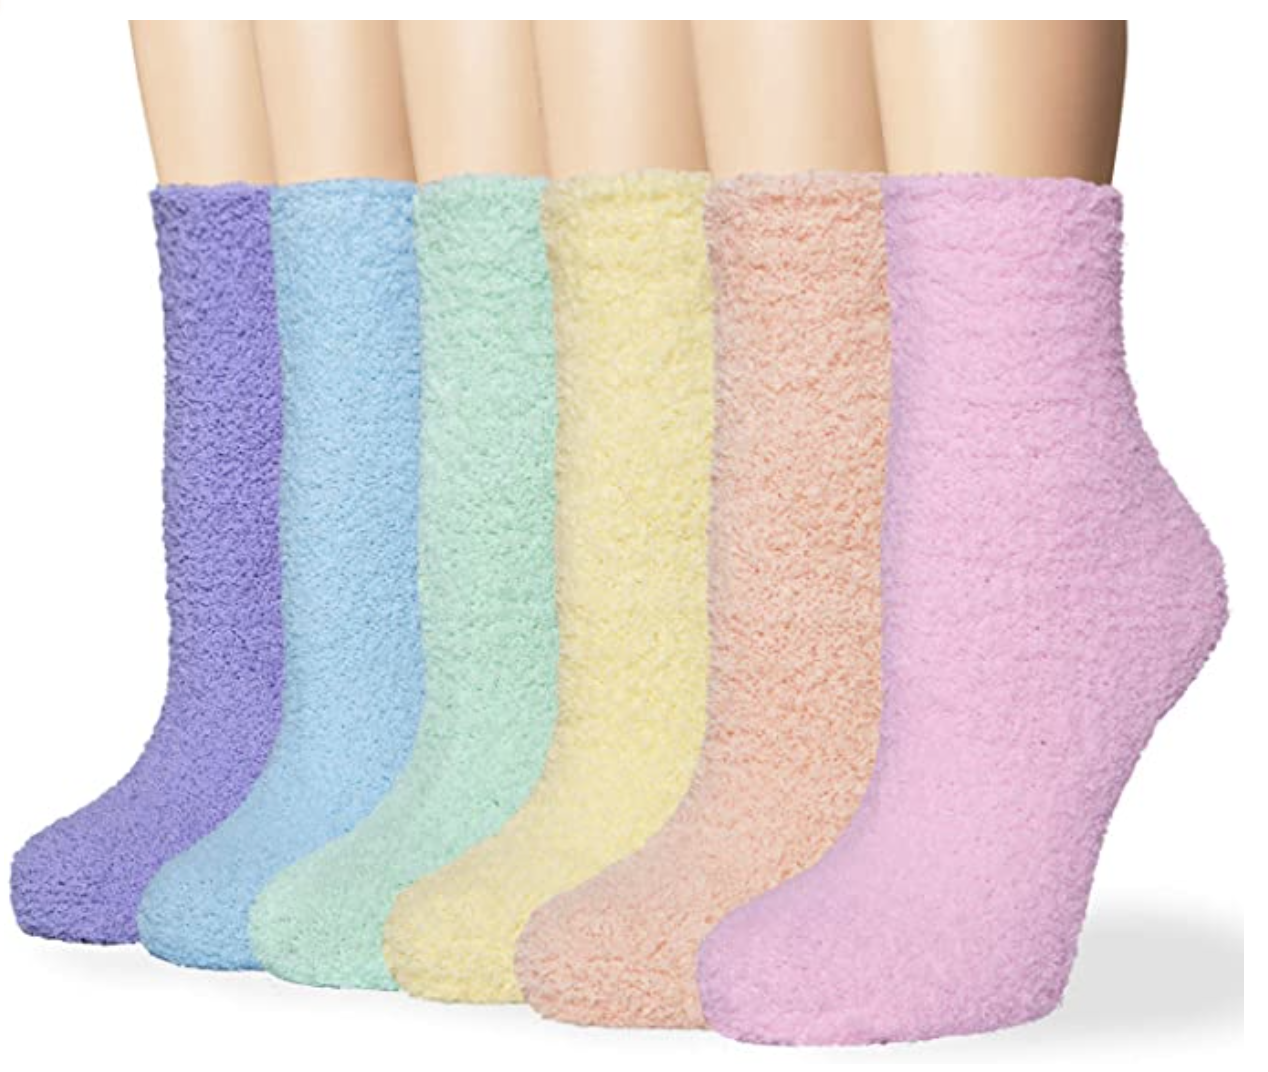 rainbow fuzzy socks